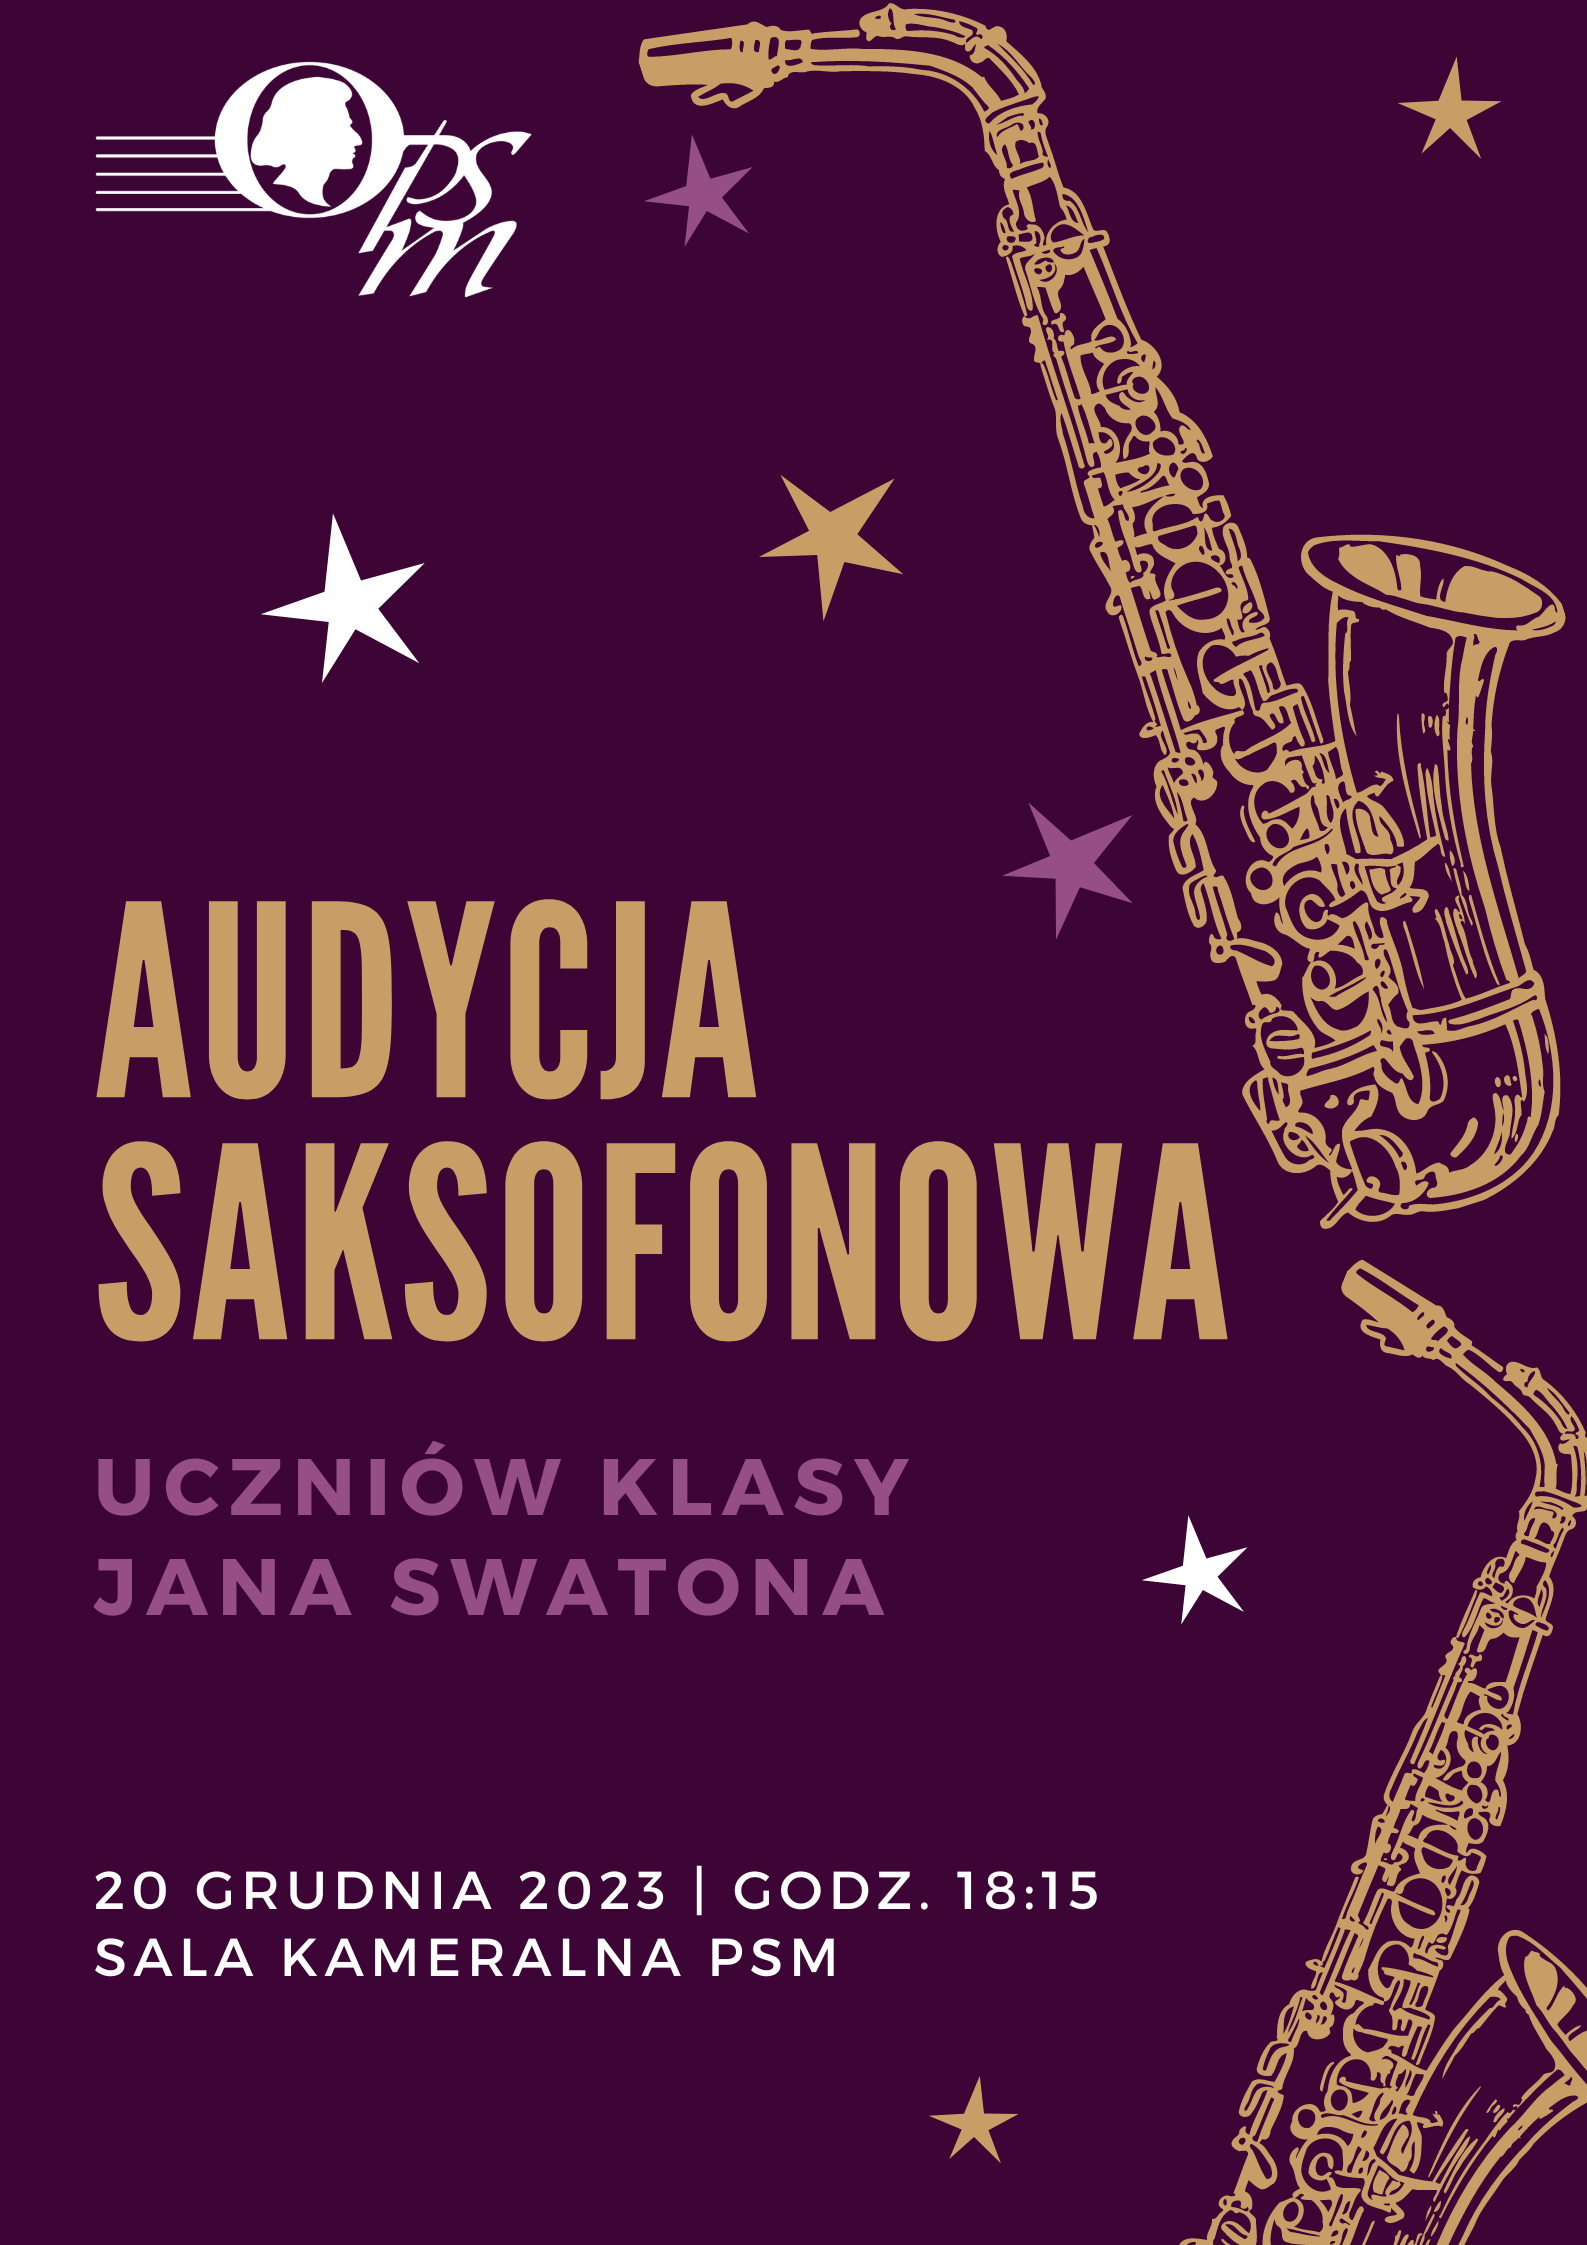 Plakat audycji saksofonowej uczniów klasy Jana Swatona